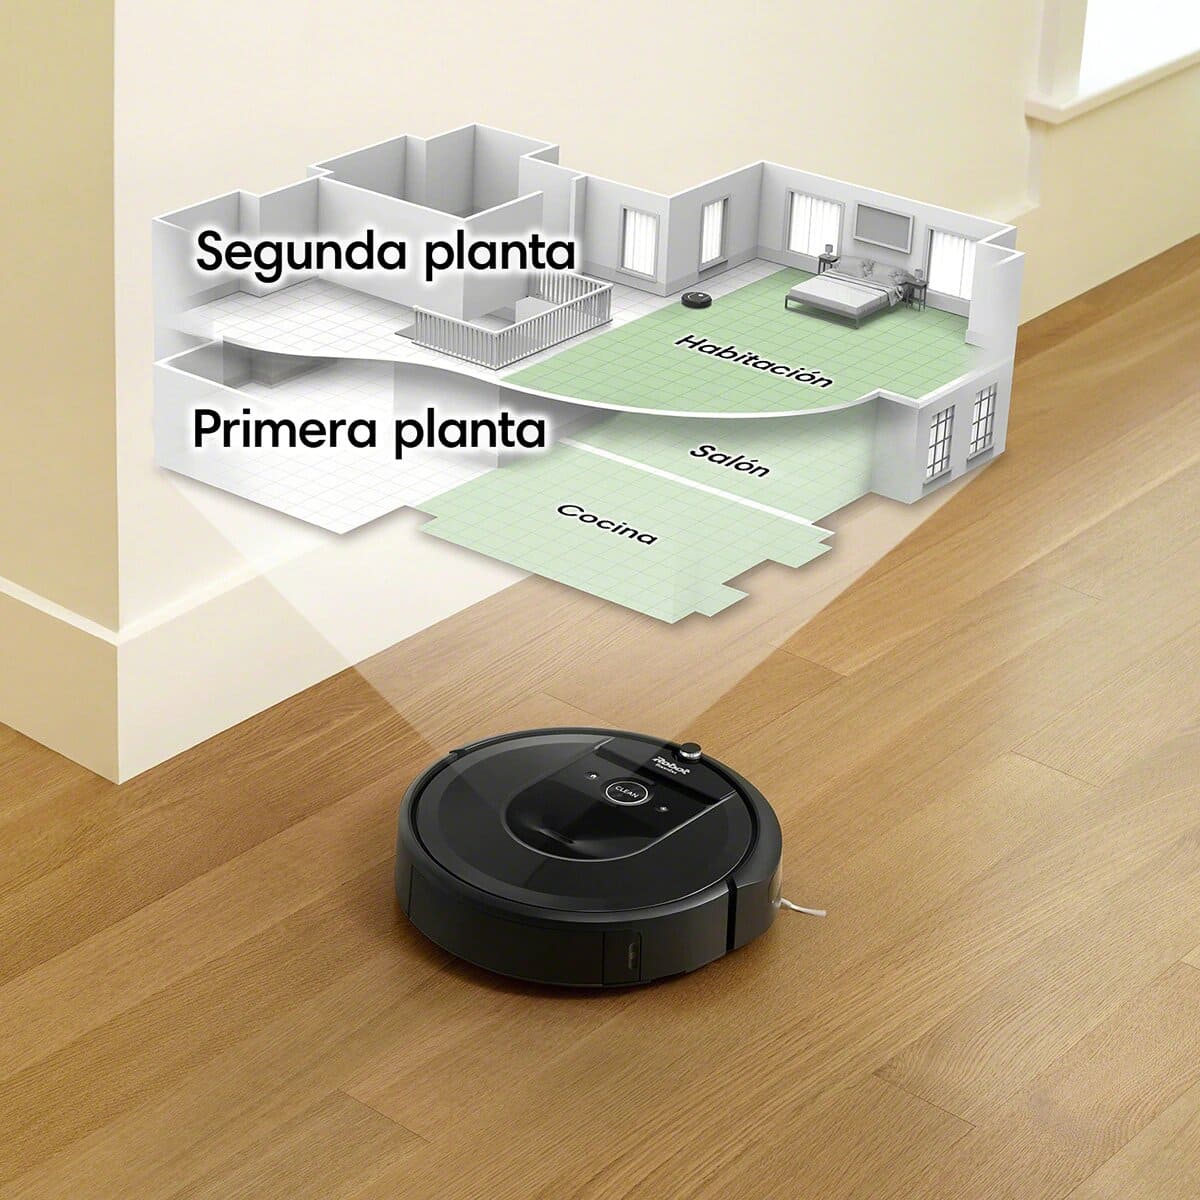 Robot aspiradora Roomba rebajado en El Corte Inglés aprendiendo el mapa de la casa